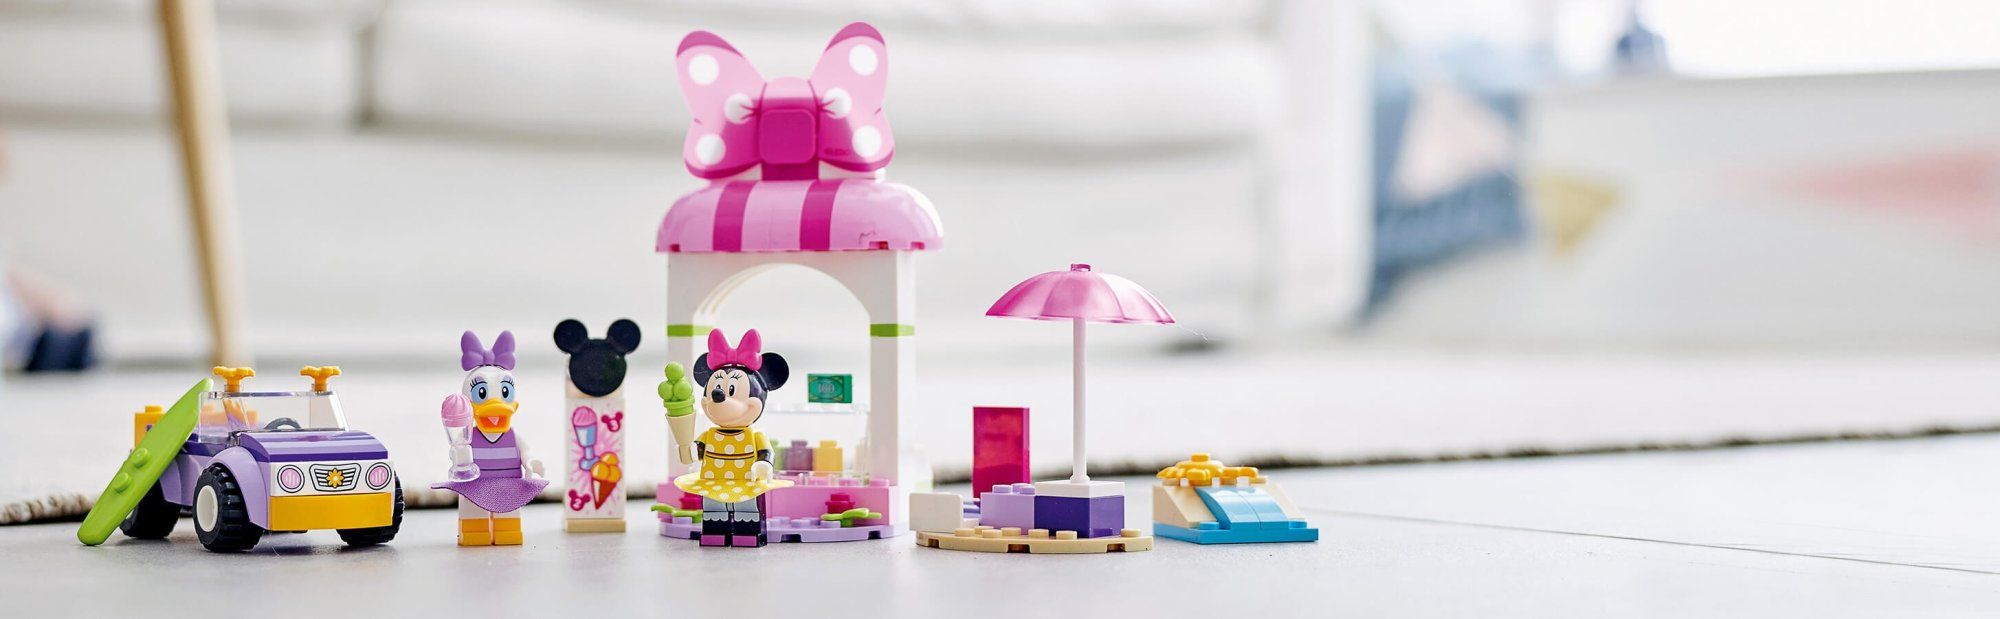 LEGO Disney Mickey and Friends 10773 Myška Minnie a zmrzlinárna